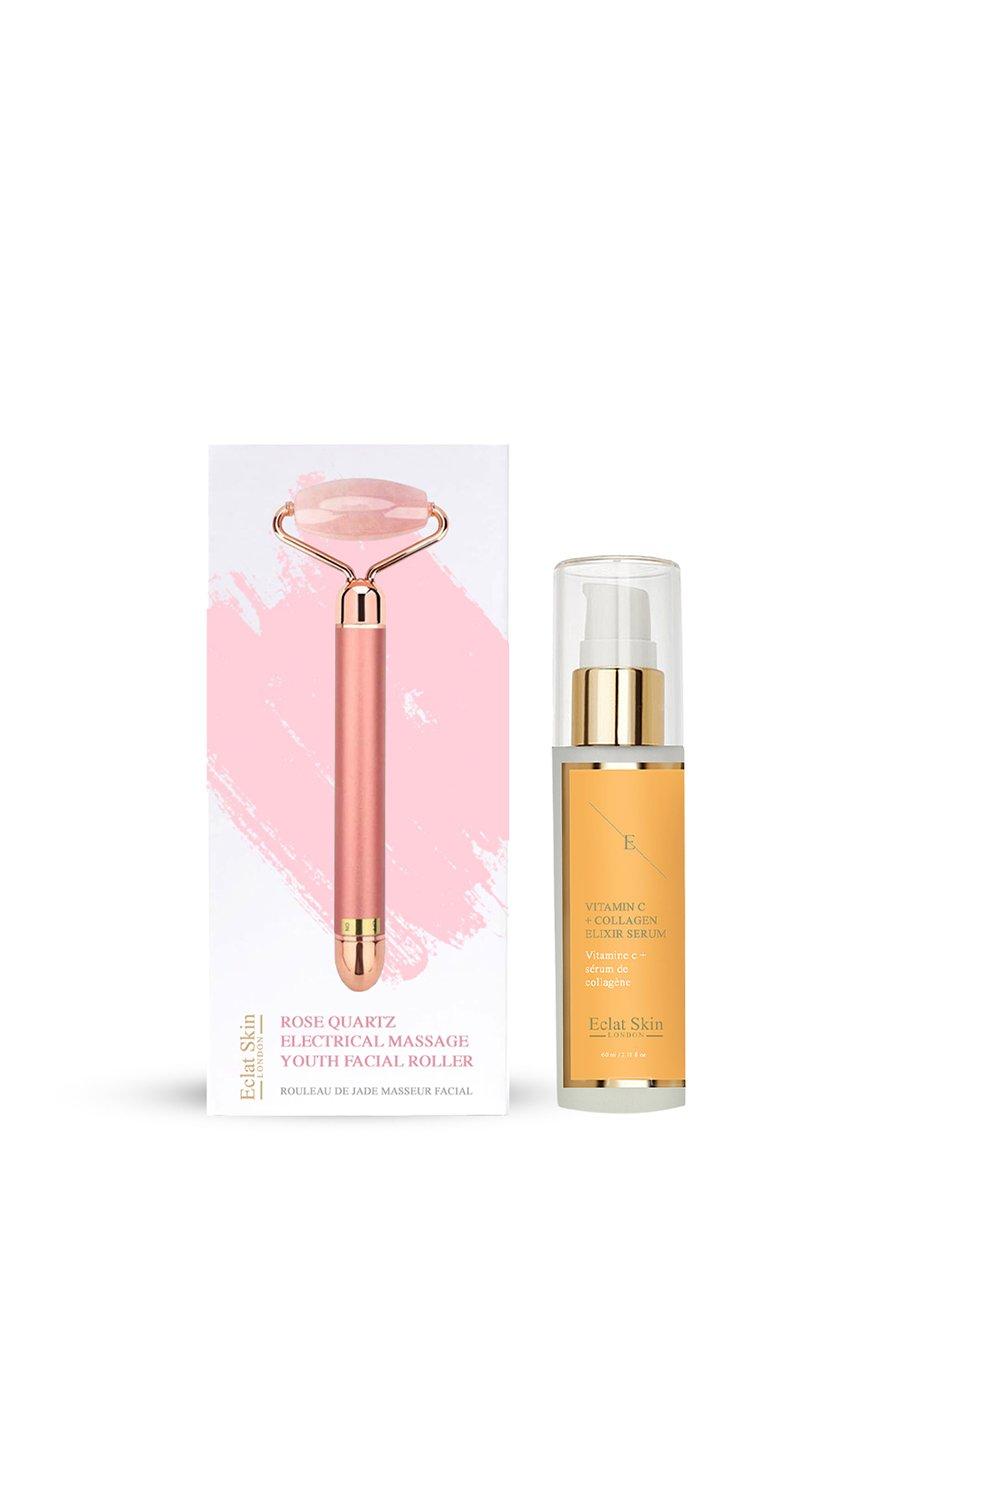 rose quartz facial massage + vitamin c serum 60ml